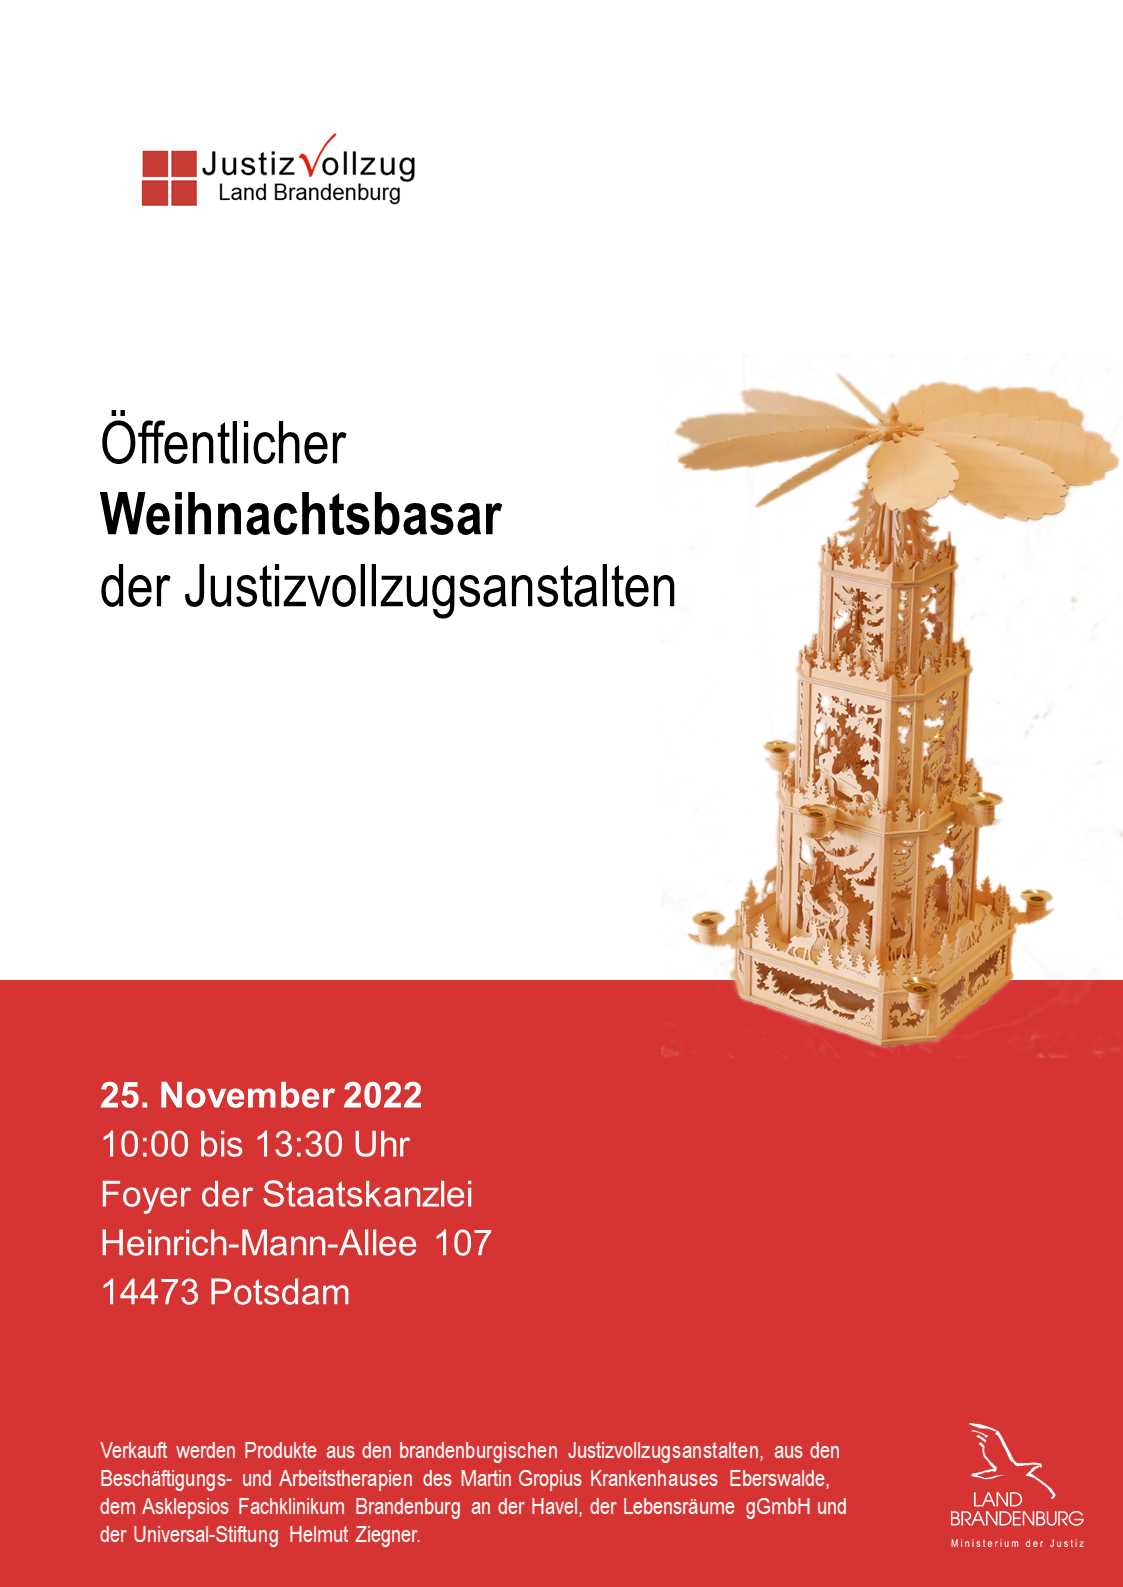 Plakat des Weihnachtsbasar des brandenburgischen Justizvollzugs